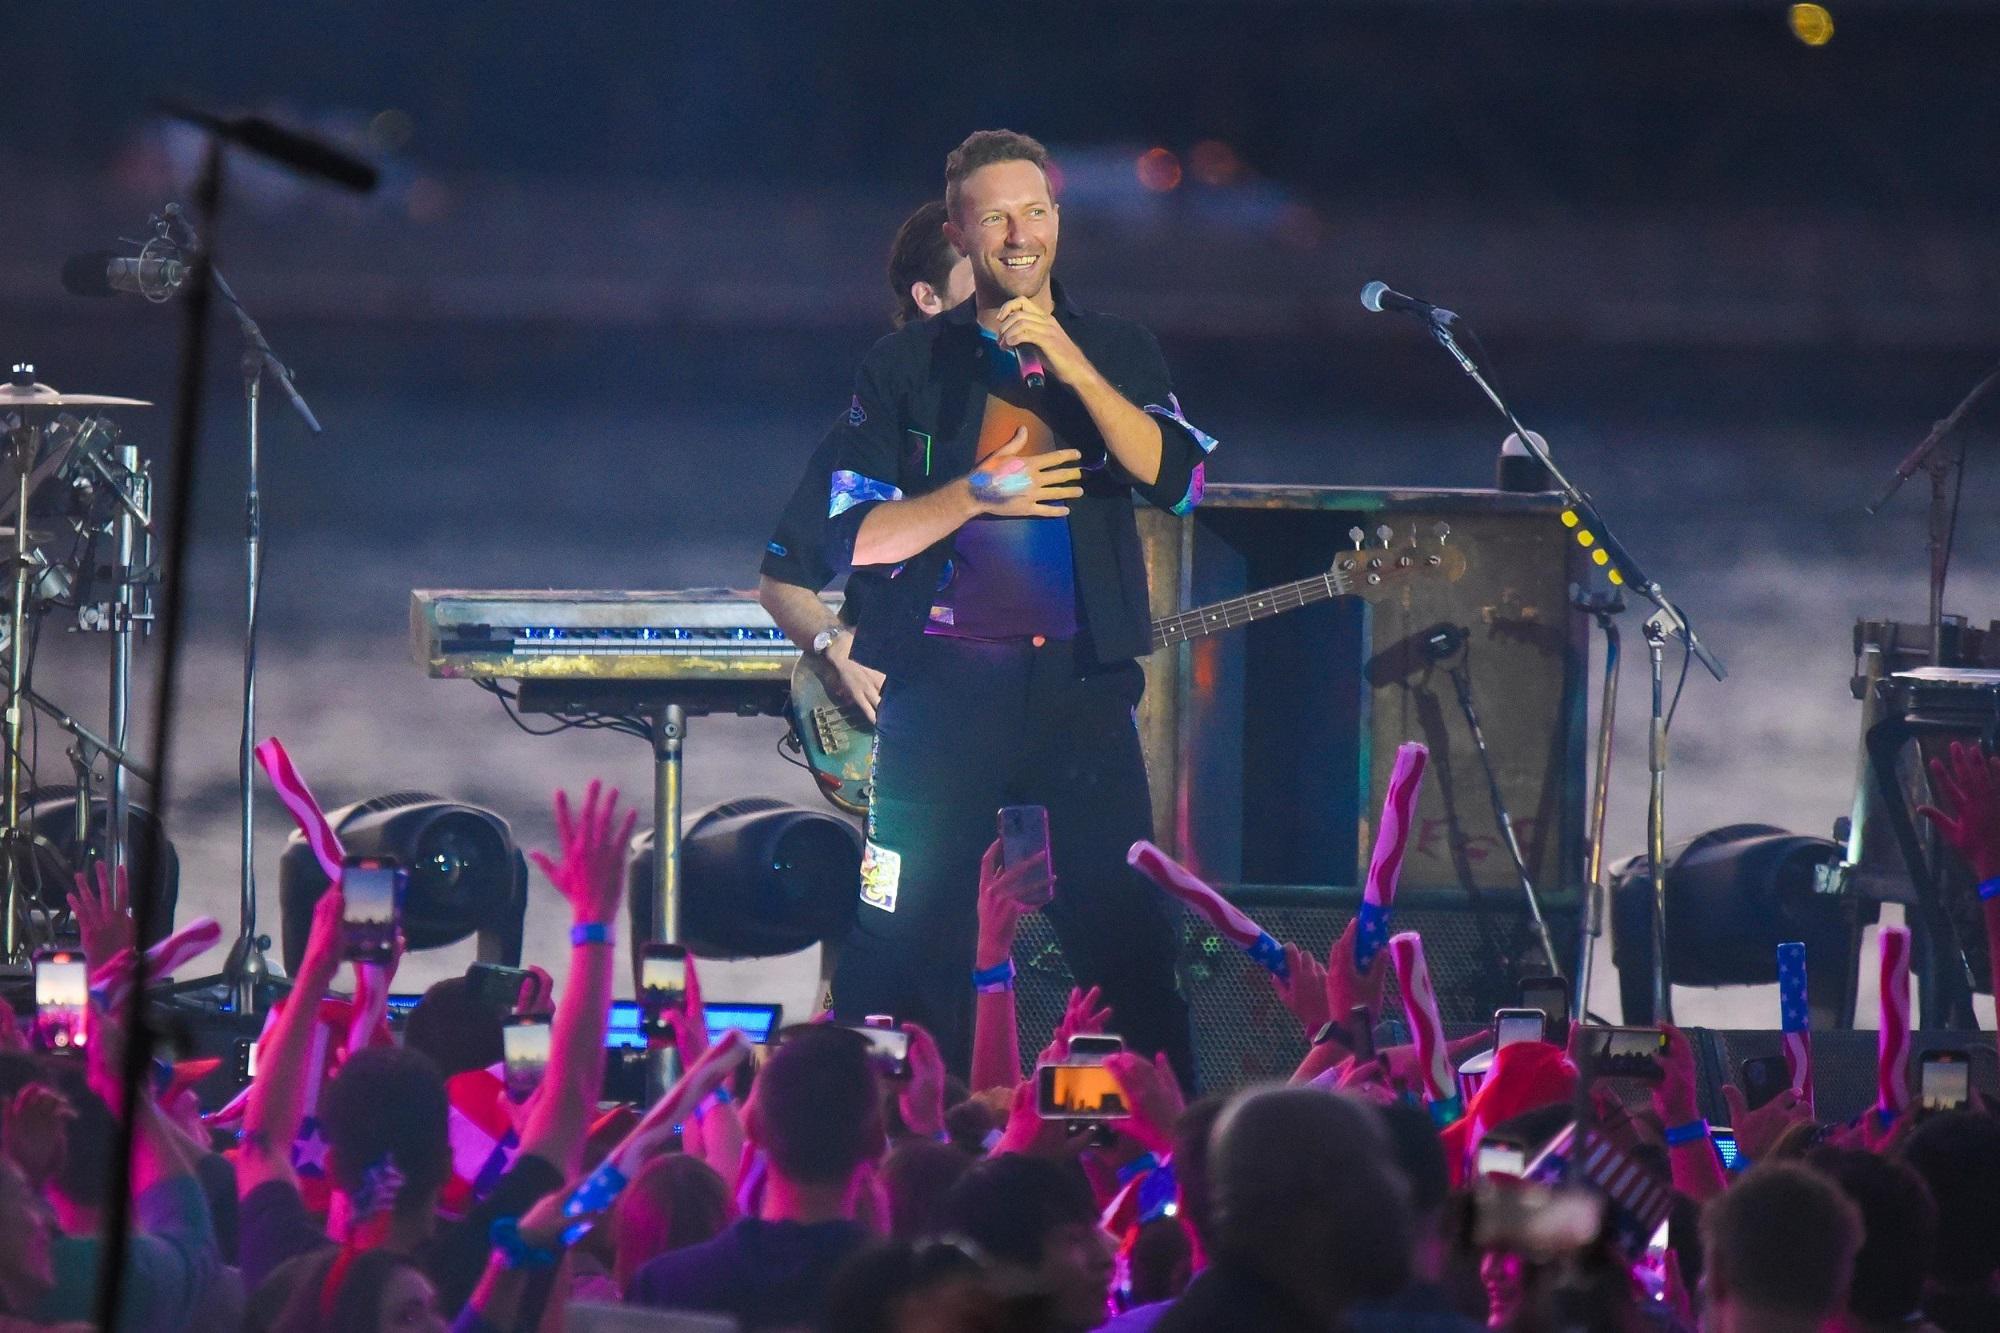 Ragazza disabile esclusa da live Coldplay assisterà a evento - trovata soluzione